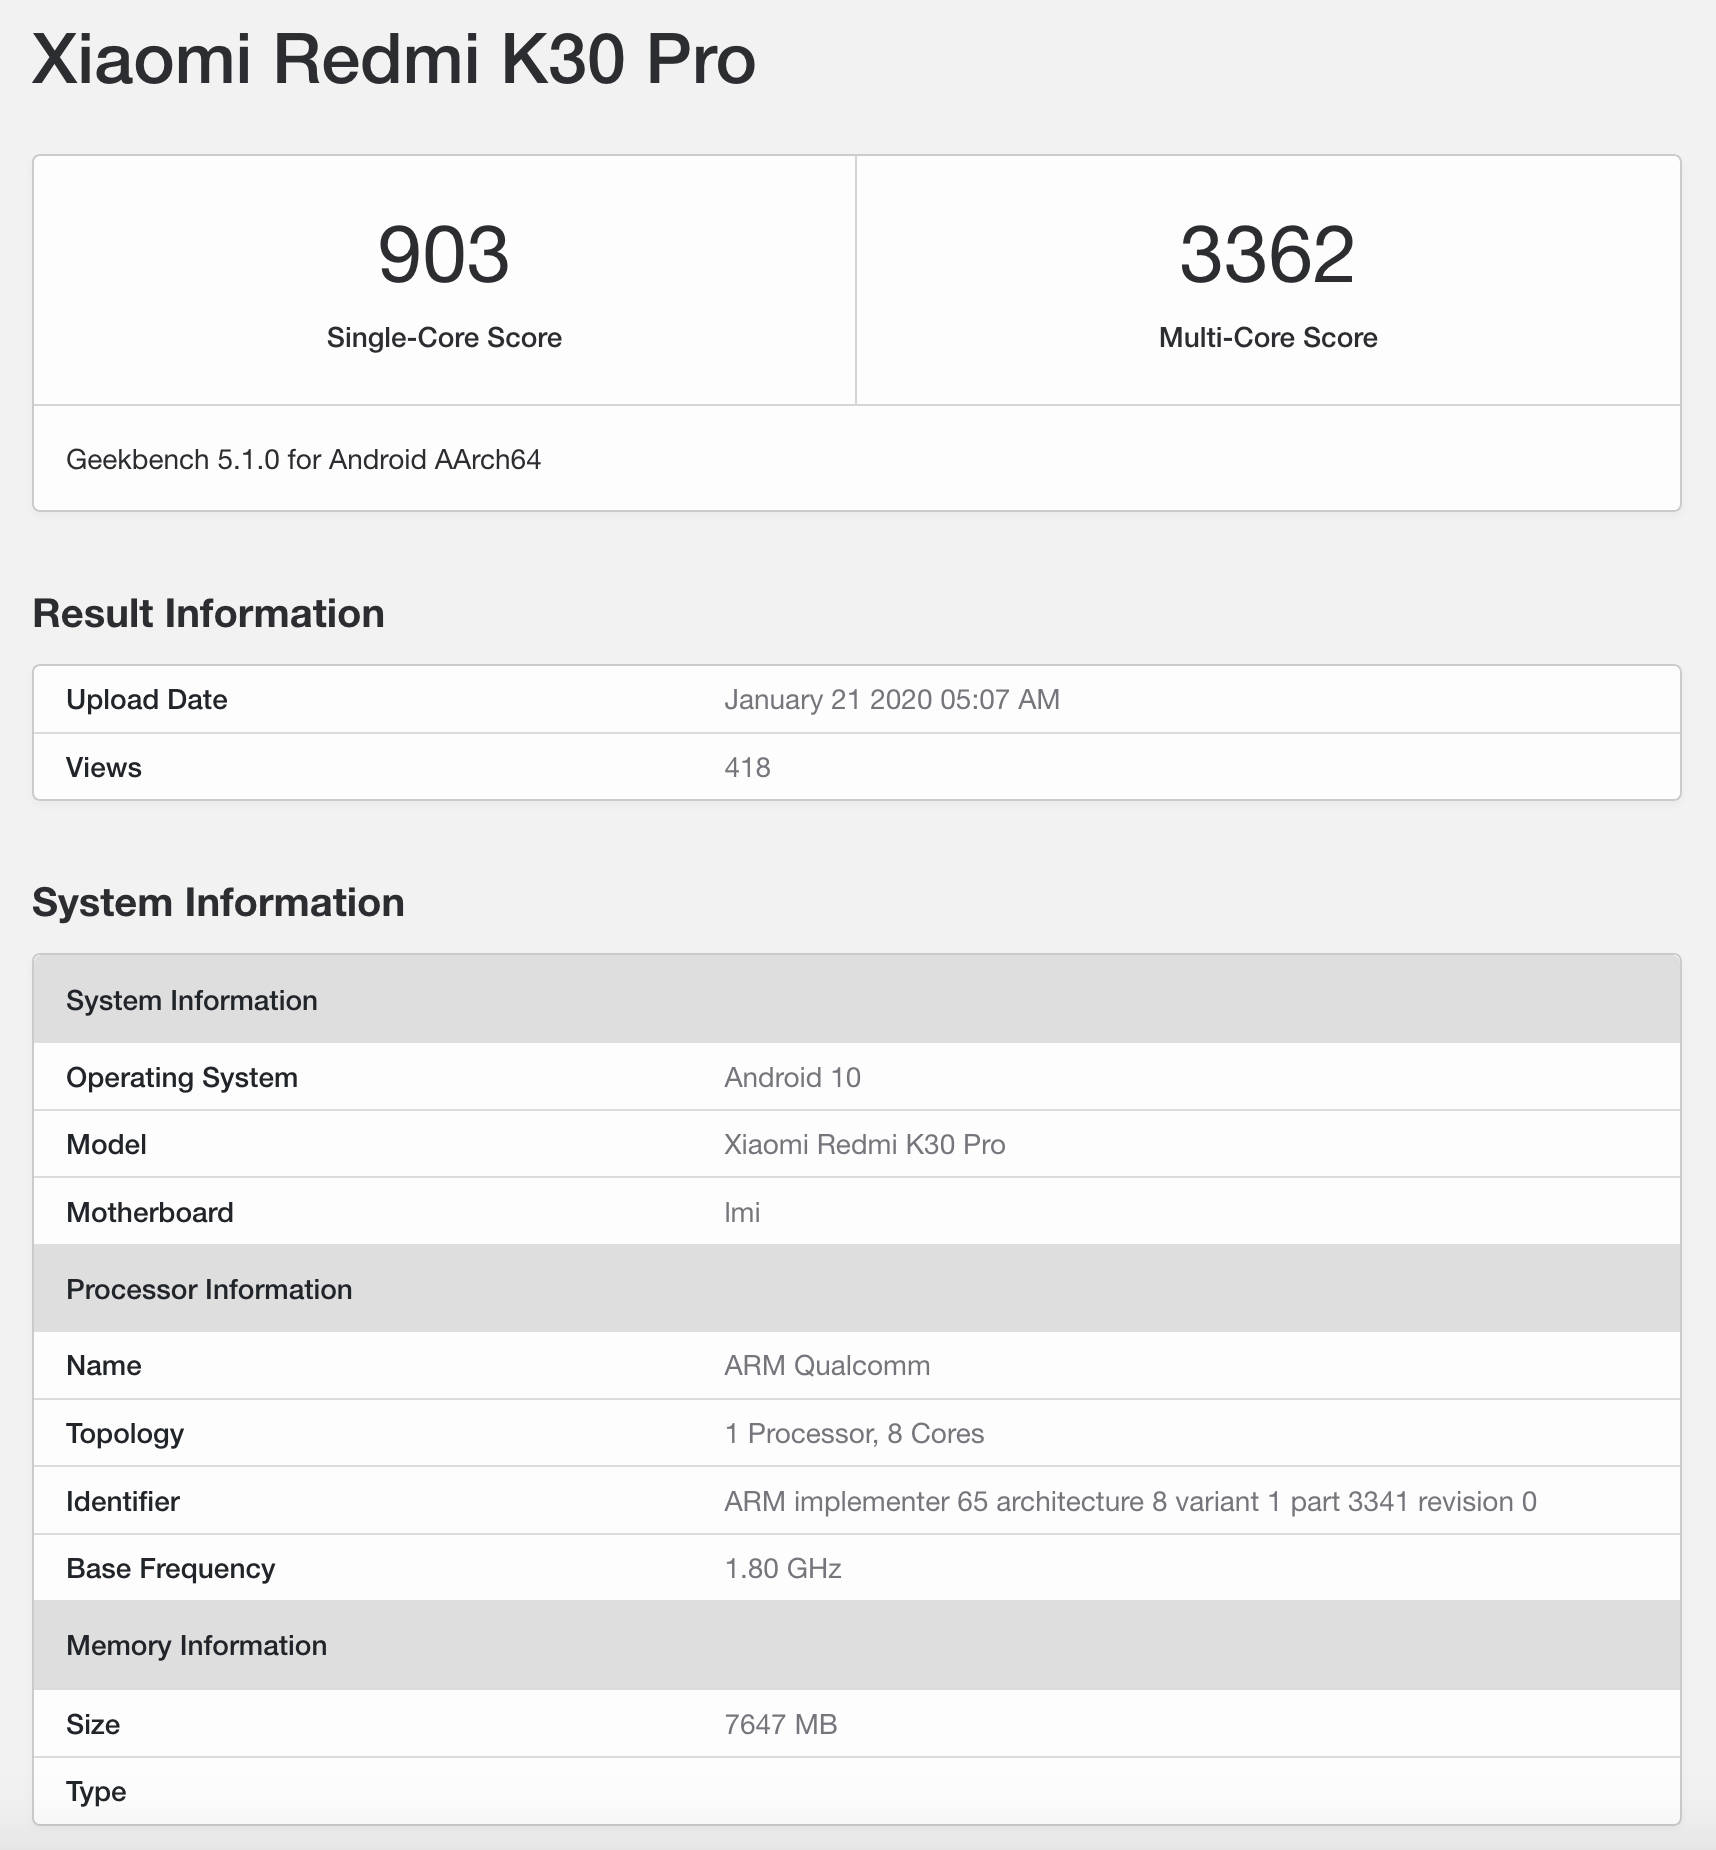 Xiaomi Mi 10 Pro Redmi K30 Pro kiedy premiera plotki przecieki wycieki specyfikacja dane techniczne Geekbench Snapdragon 865